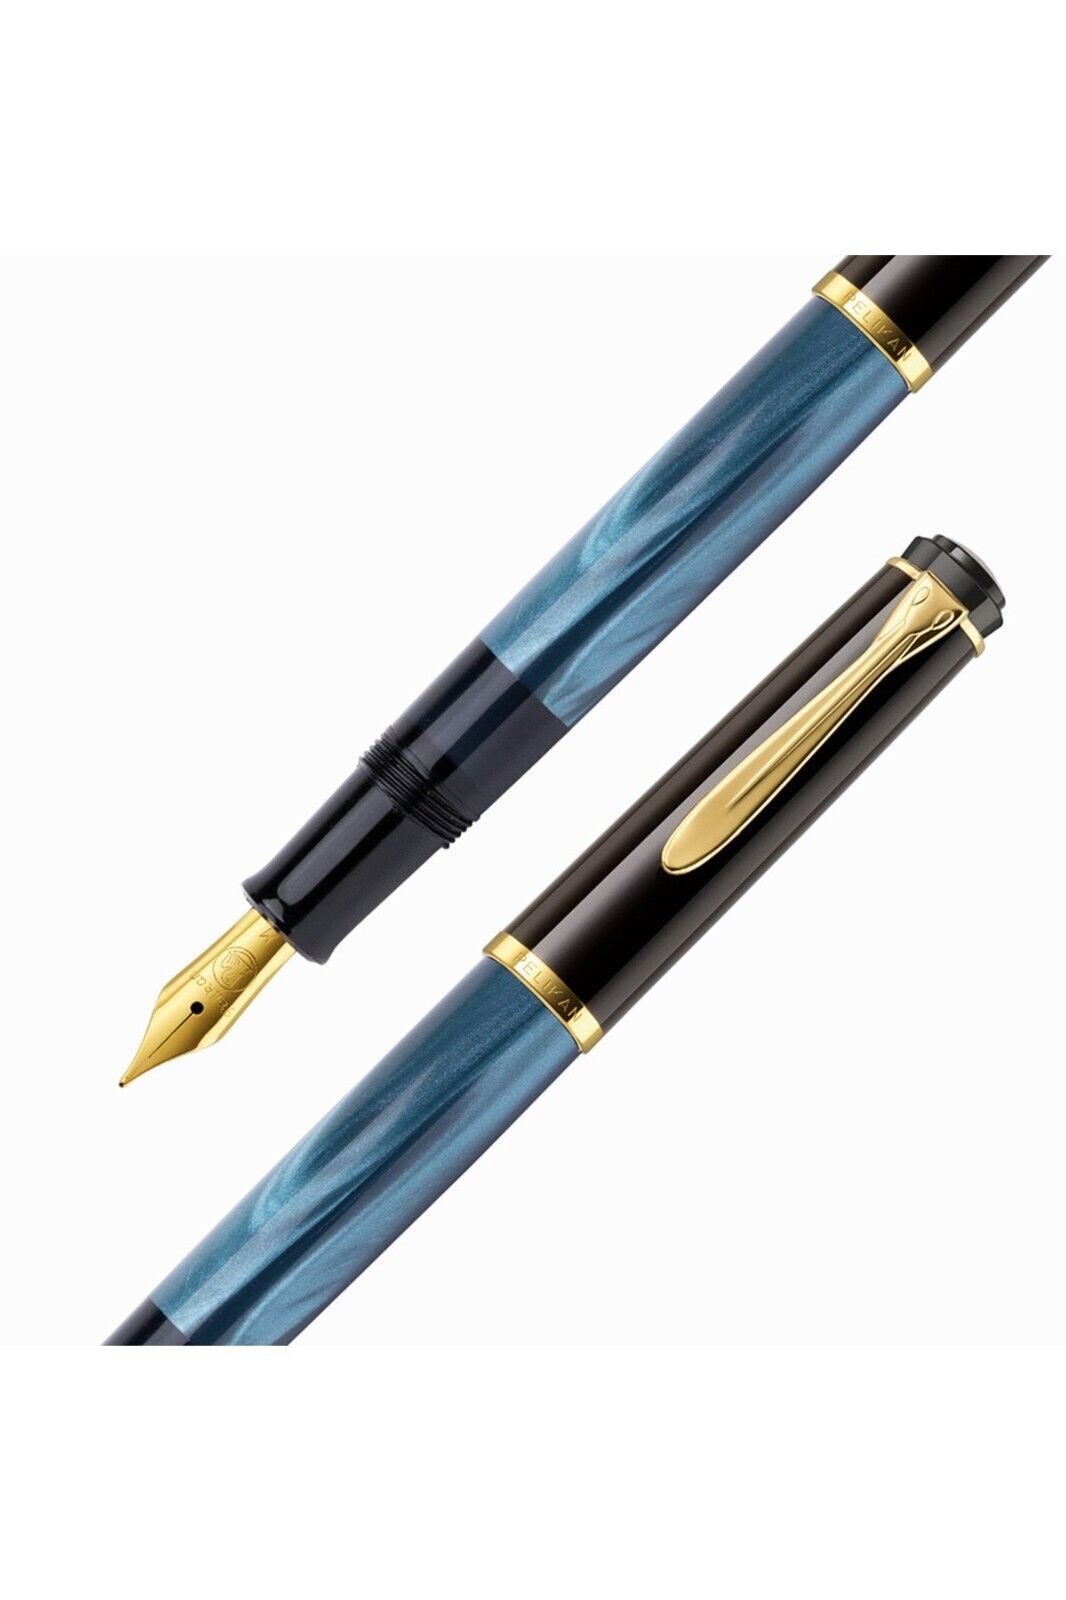 Pelikan M200 Pearl Blue Fountain Pen - M Nib PEN